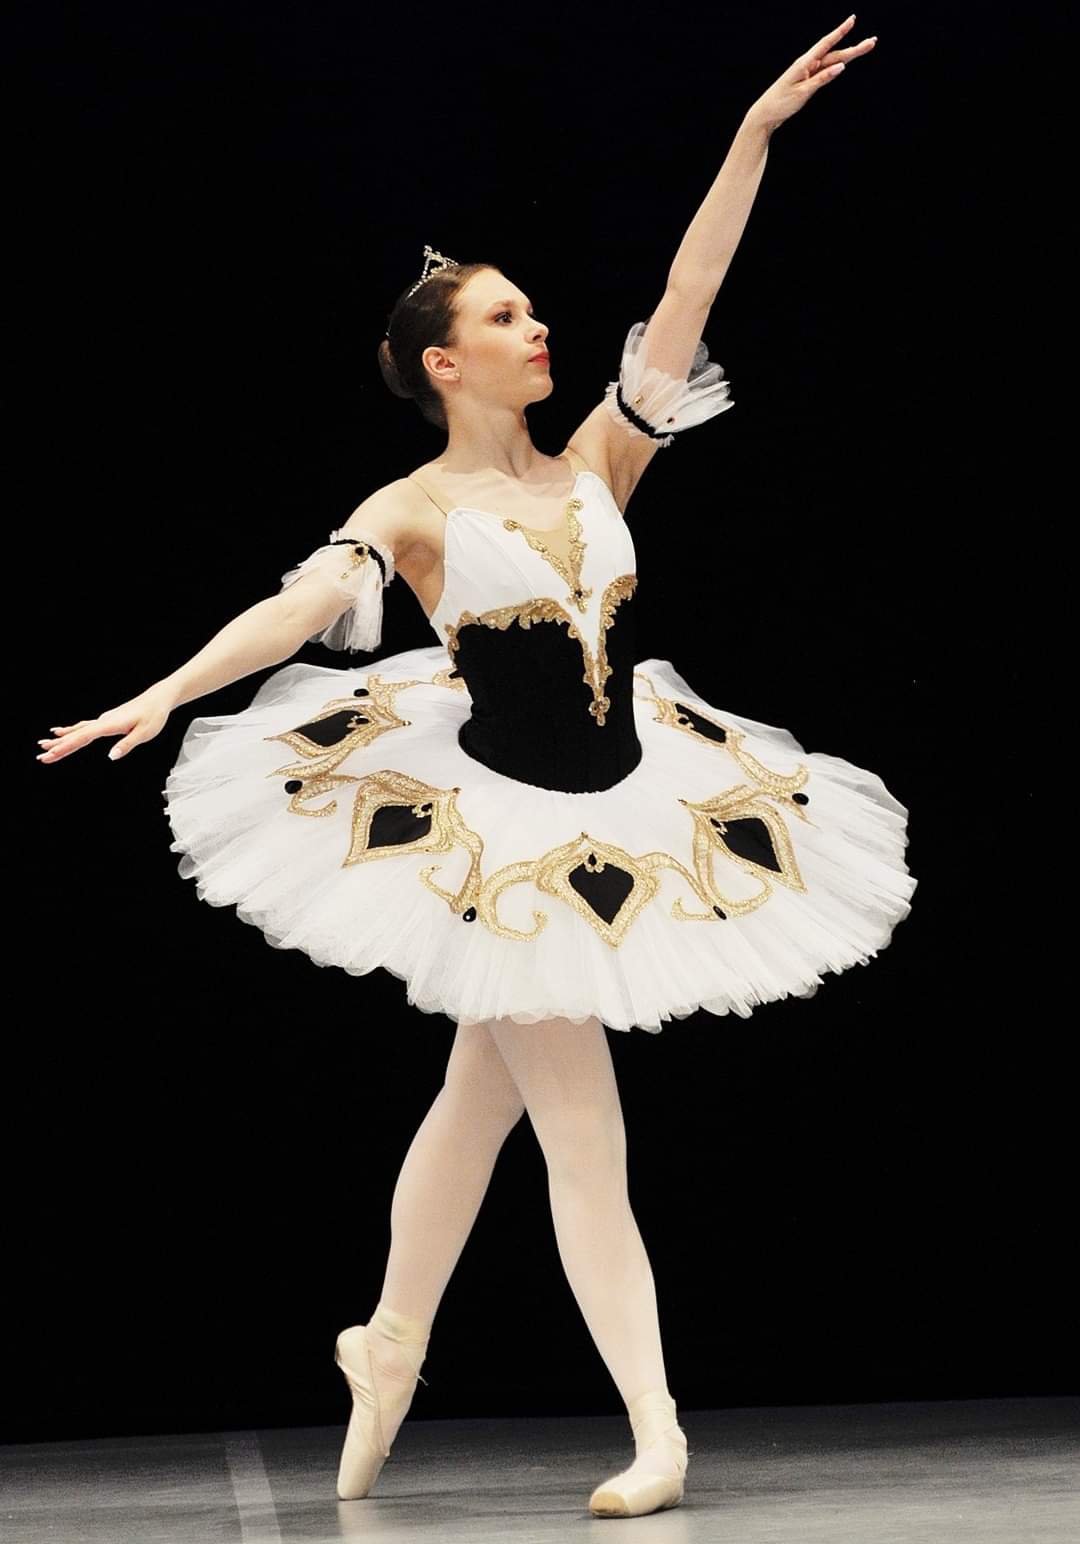 Paczka baletowa klasyczna szycie stroje baletowe tutu classical costumes ballet Kitri Esmeralda Paquita custom stage yagp